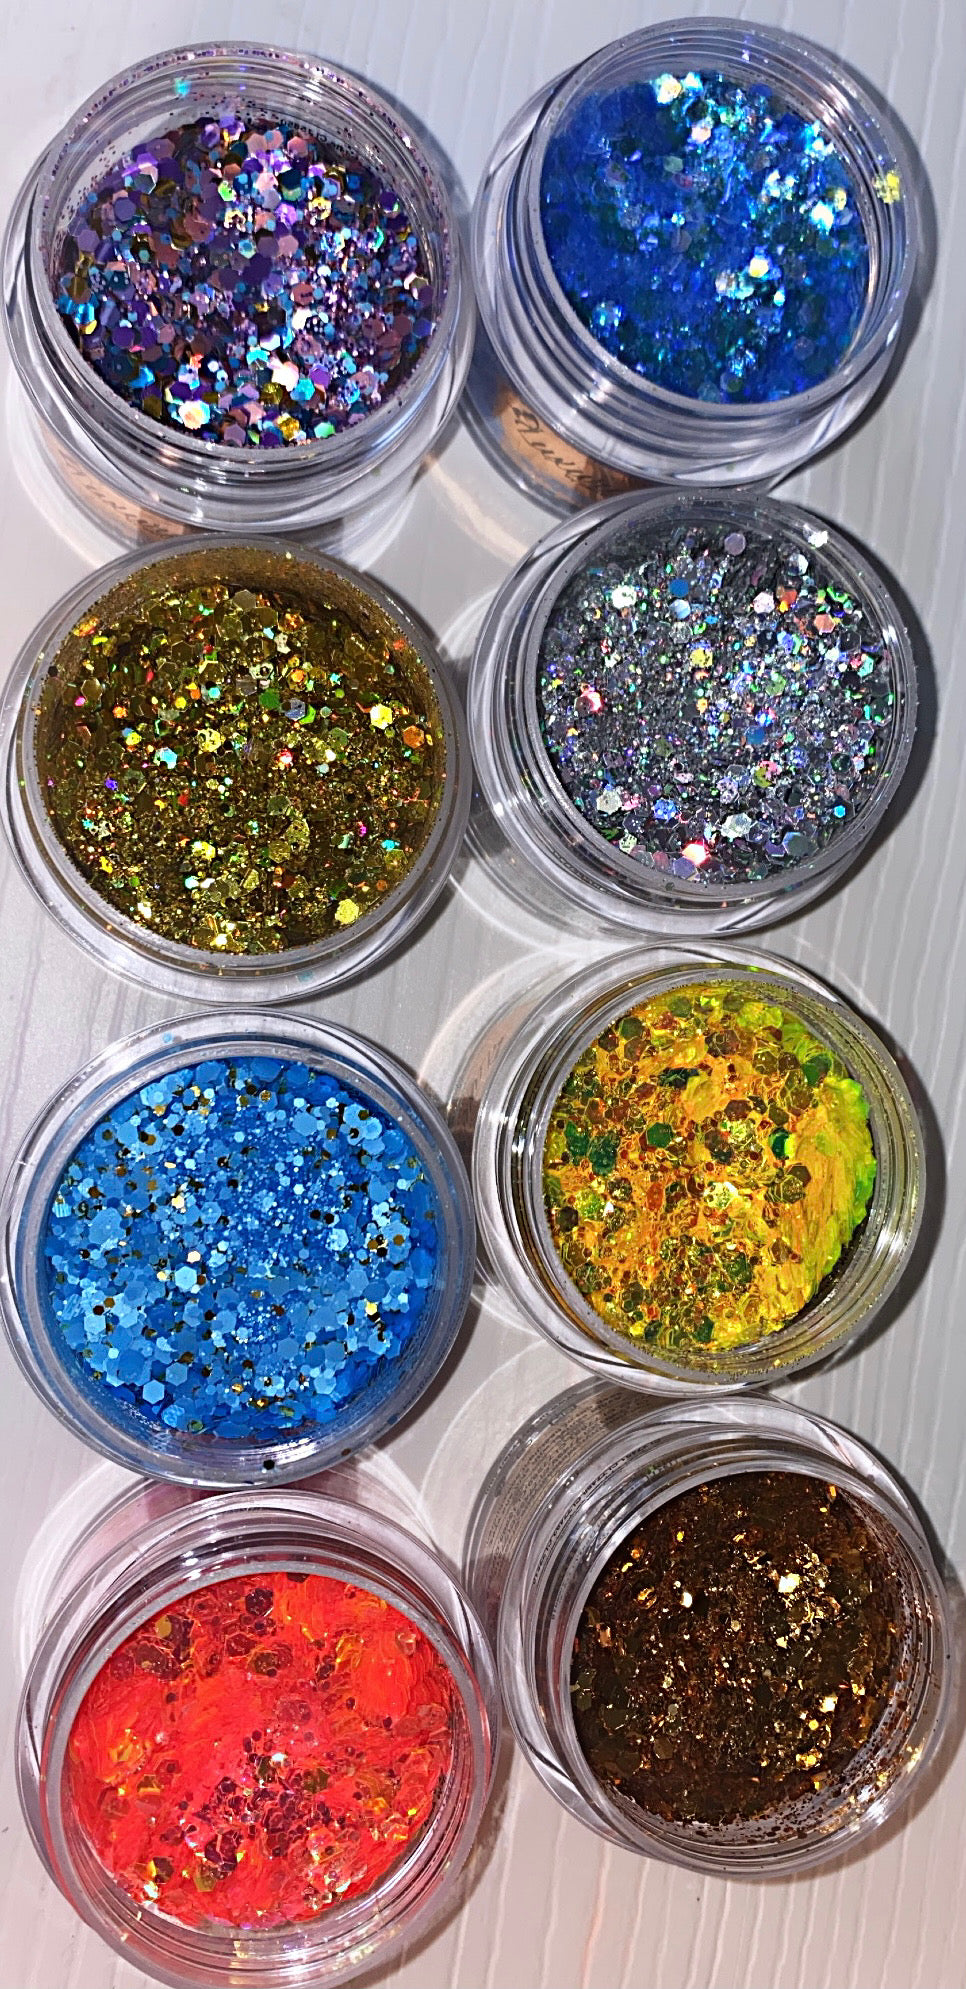 New Martha Stewart Fine Glitter Flocking Powder Set Of 12, 40-34Q46  Scrapbooking